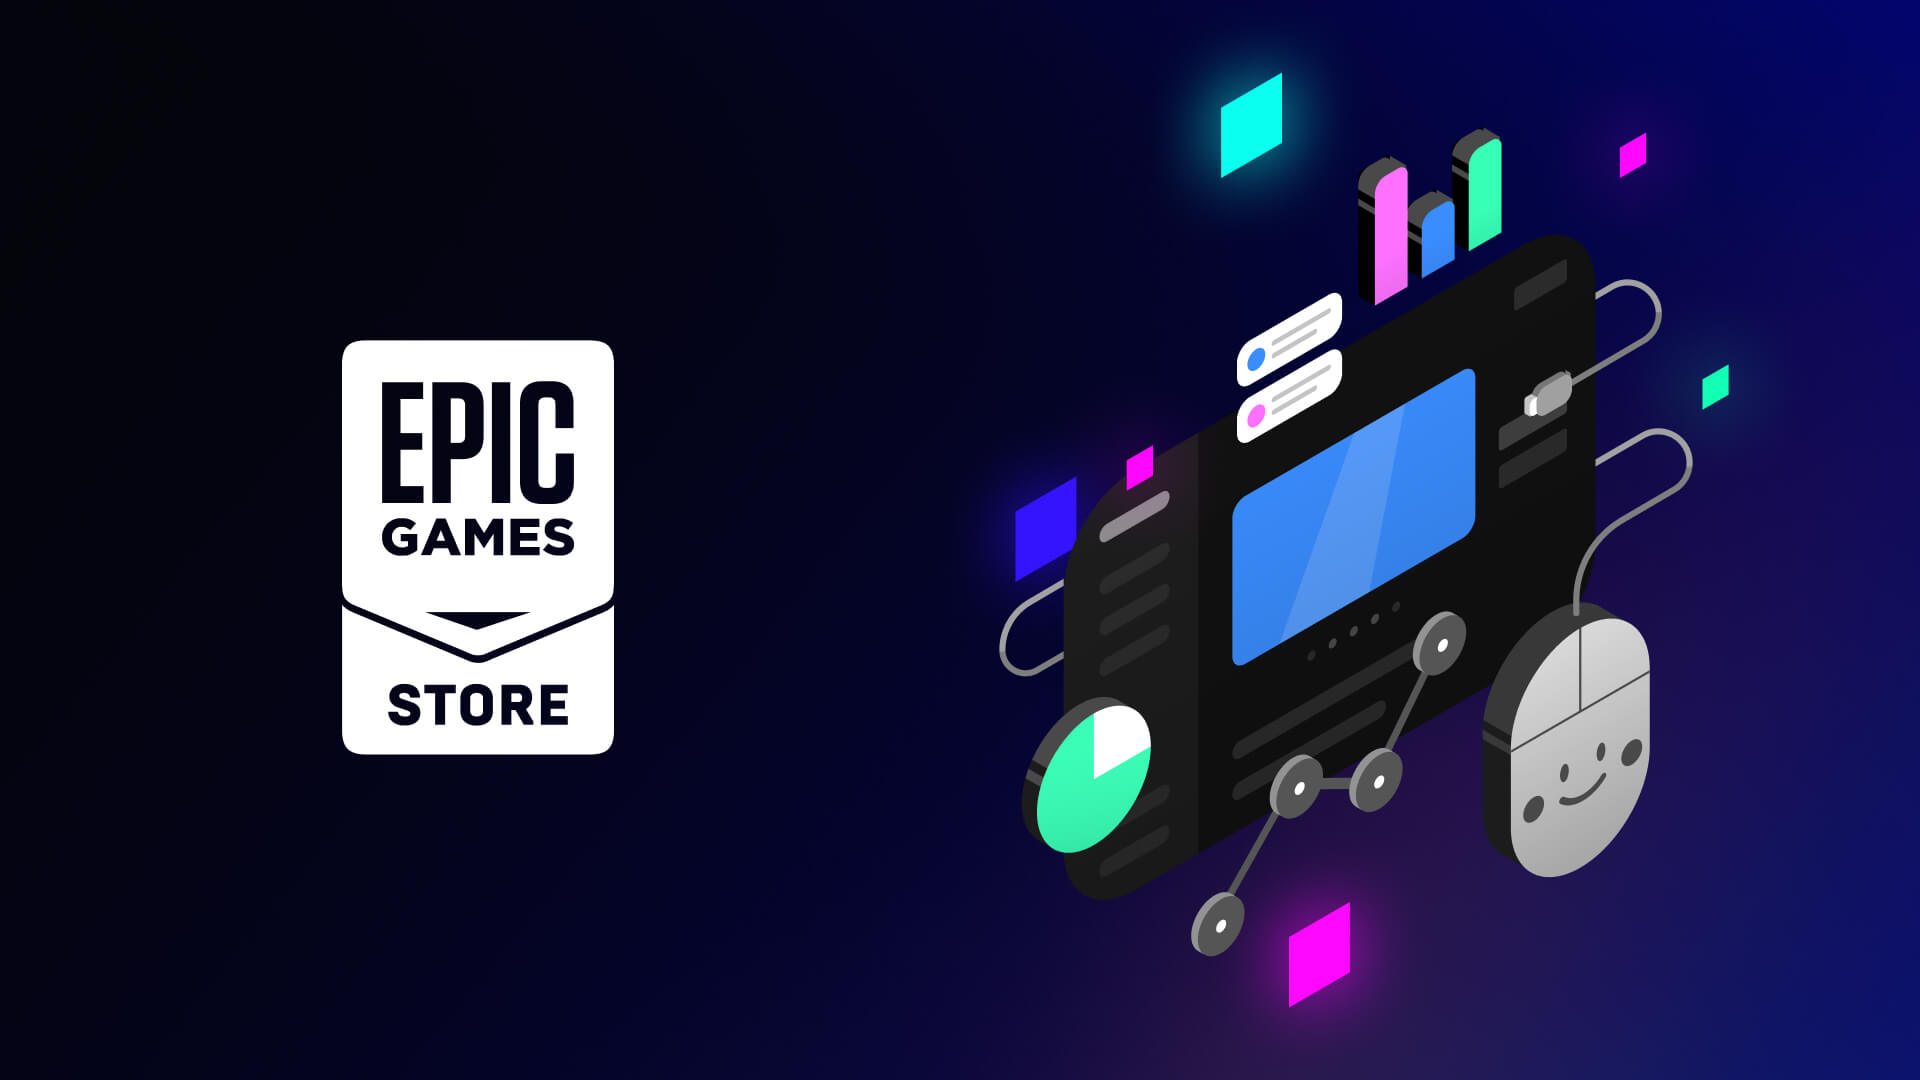 Epic Games Store รับทำเว็บไซต์ เว็บไซต์สำเร็จรูป ราคาถูก เว็บไซต์ราคาถูก รับออกแบบเว็บไซต์ ร้านค้าออนไลน์ราคาถูก ttt-website